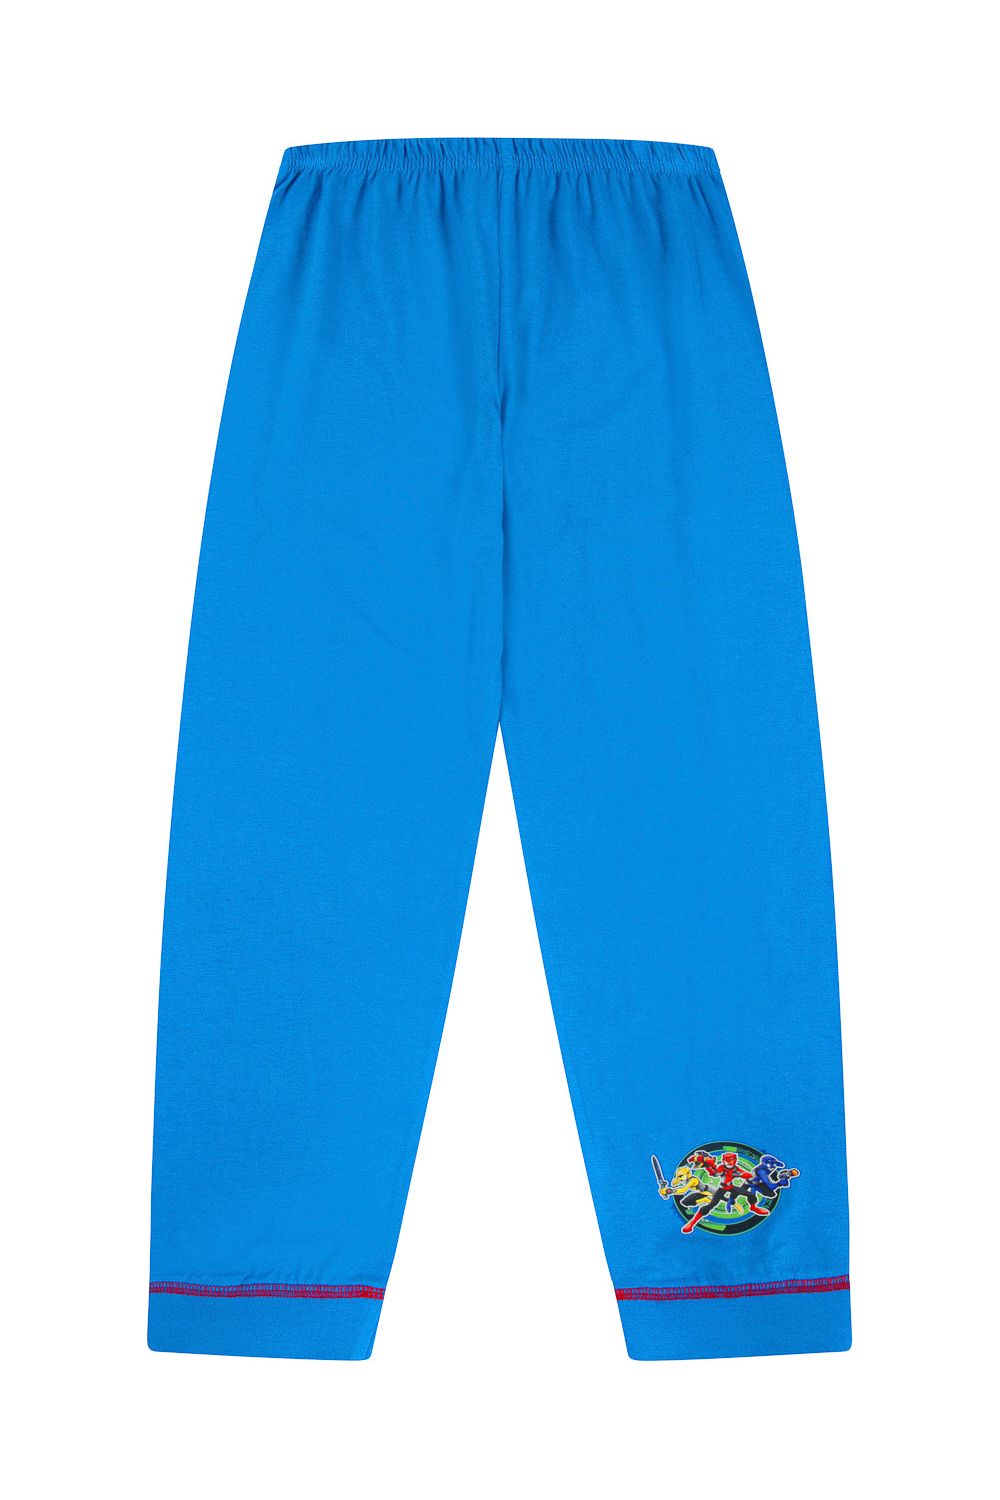 Boys Power Rangers 'Beast Morpher' Long Pyjamas (4 to 10 Years) - Pyjamas.com